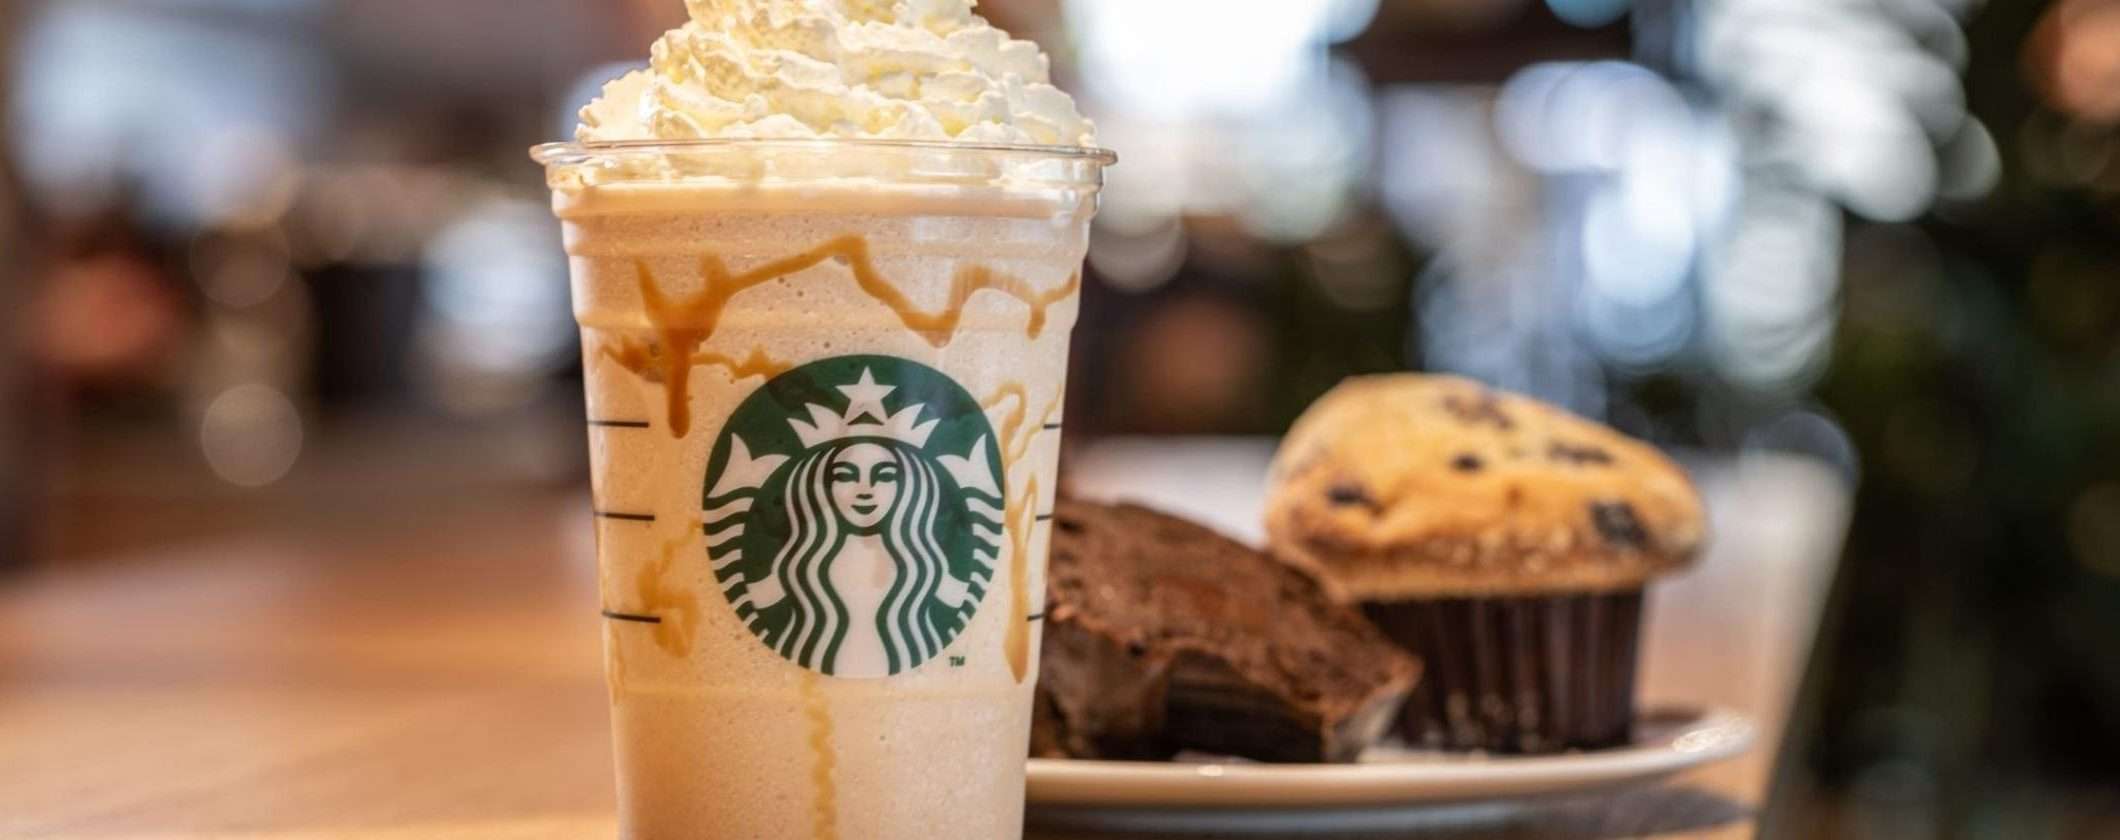 Starbucks vuole entrare nel mercato NFT